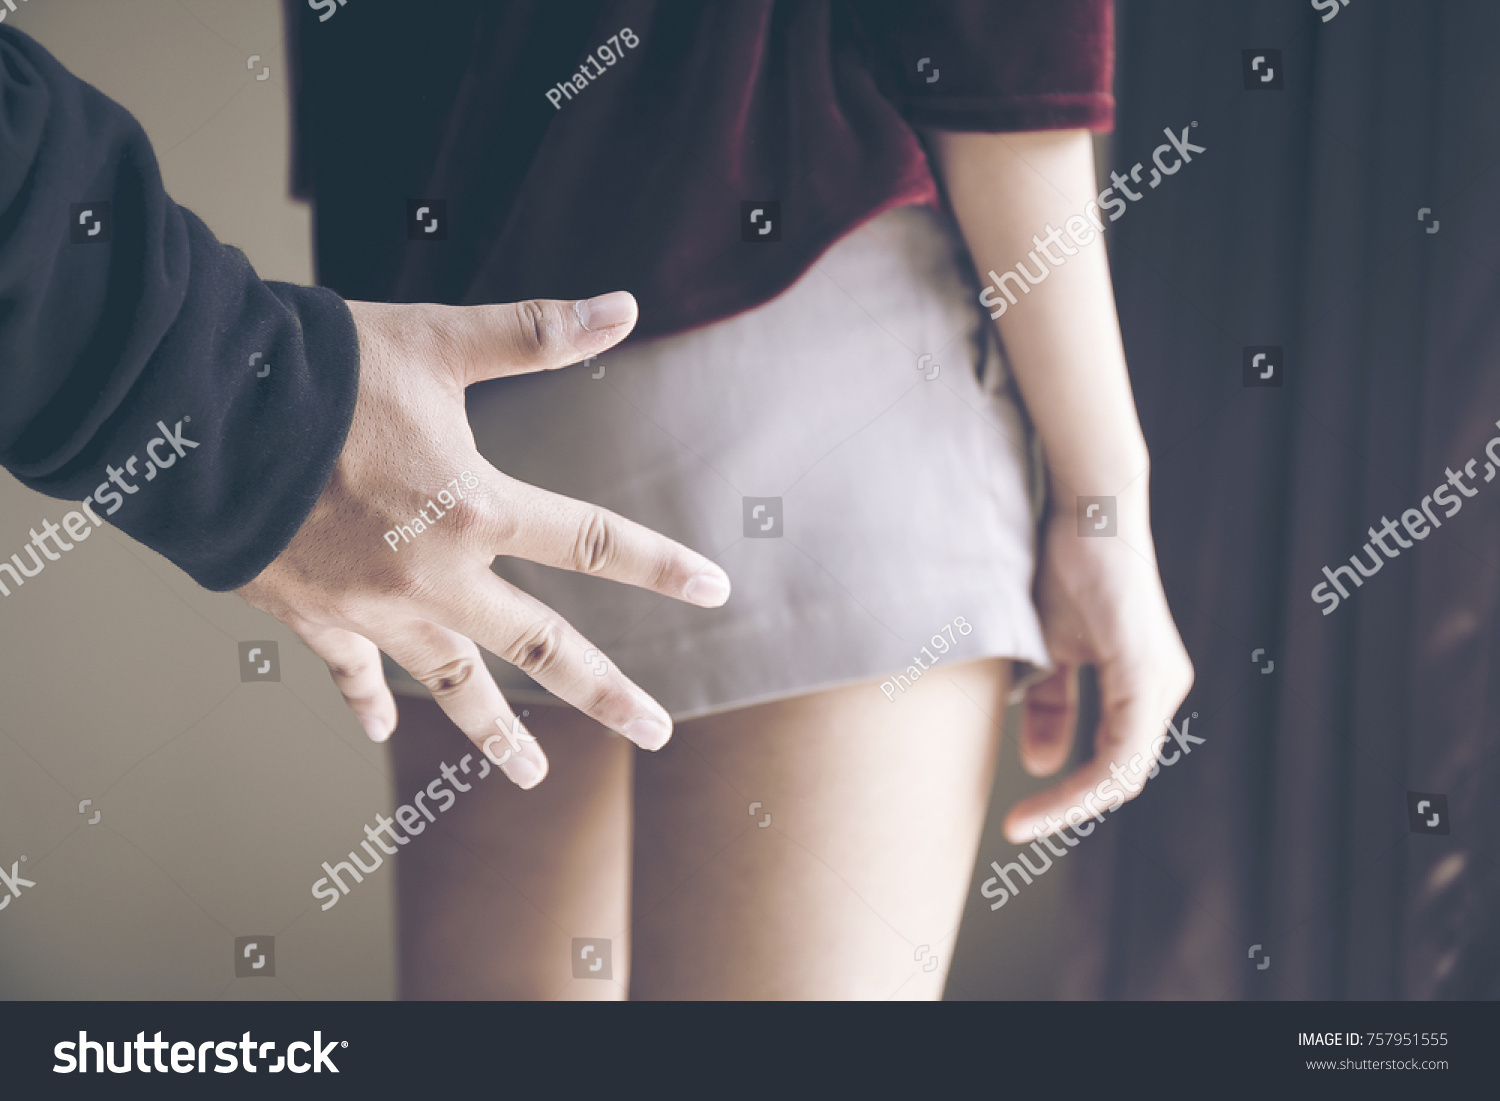 Touching girls butt